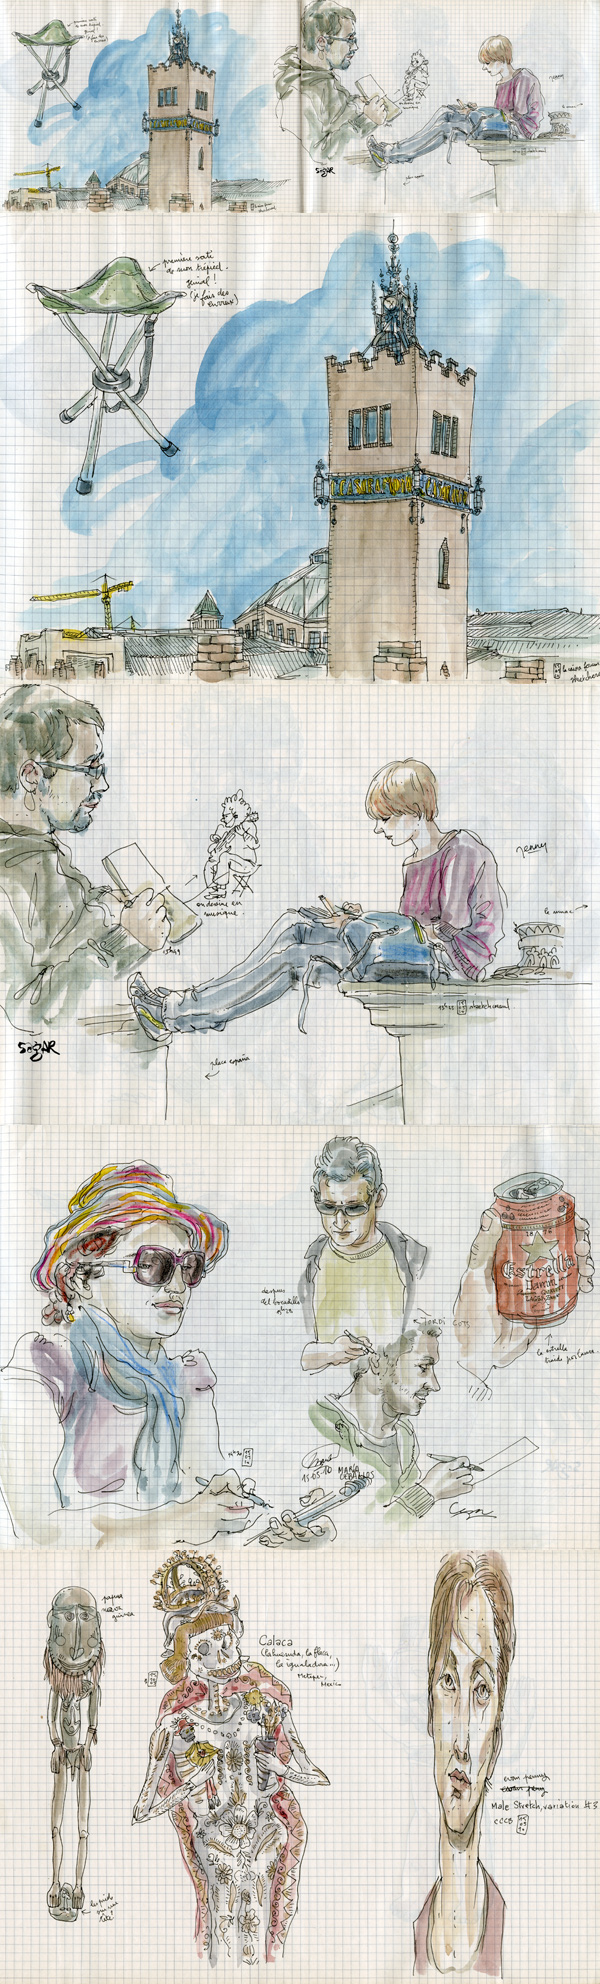 sketchcrawl #27 in barcelona